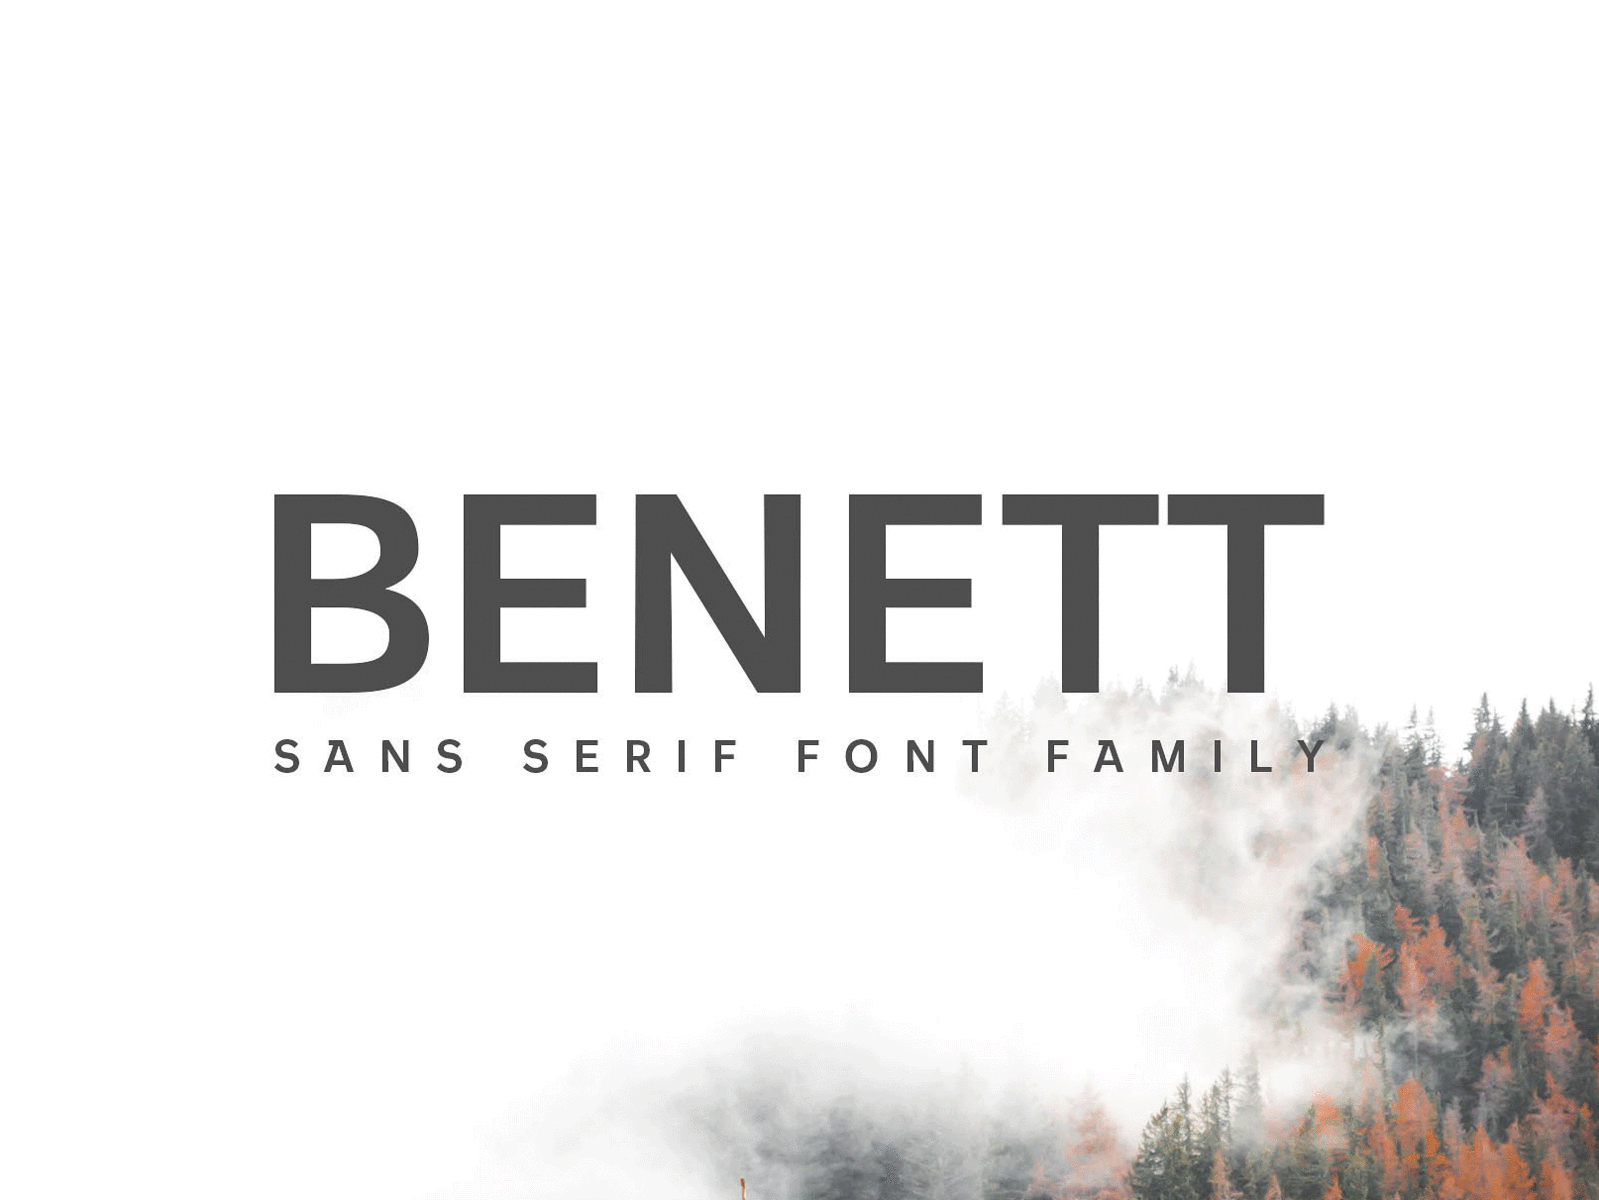 Benett Sans Serif Font Family